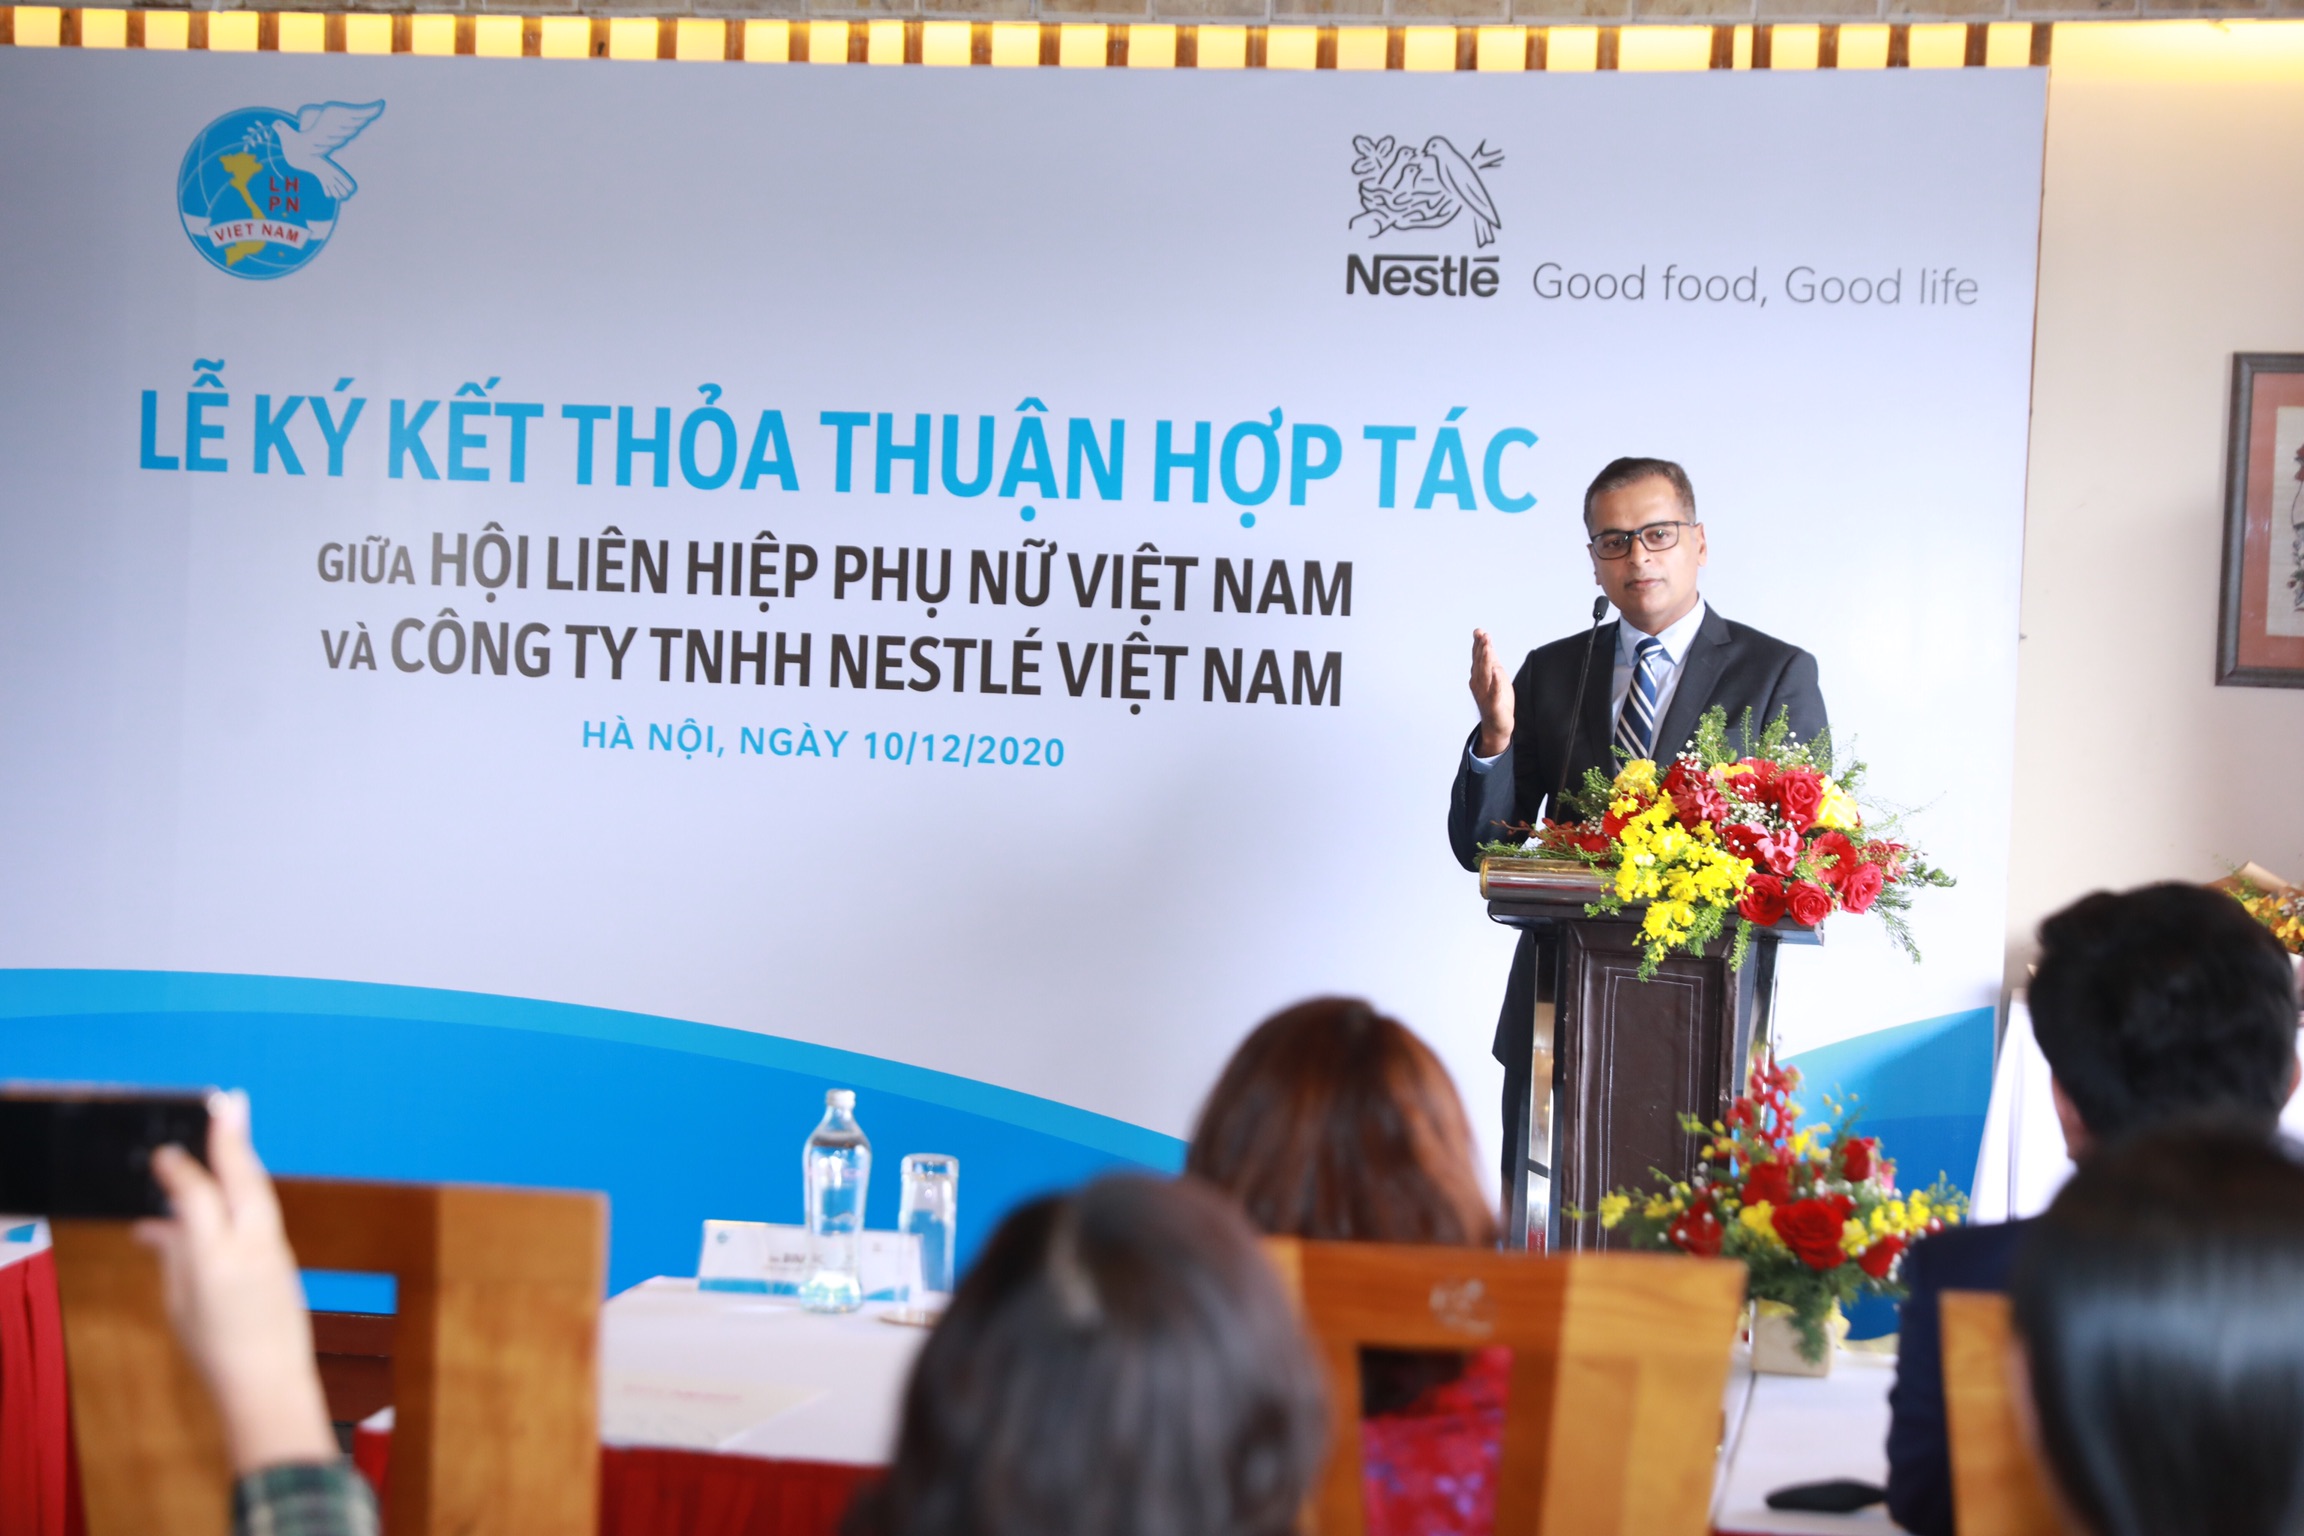 Ông Binu Jacob - Tổng Giám đốc Nestlé Việt Nam chia sẻ về chương trình hợp tác tại Lễ ký kết.